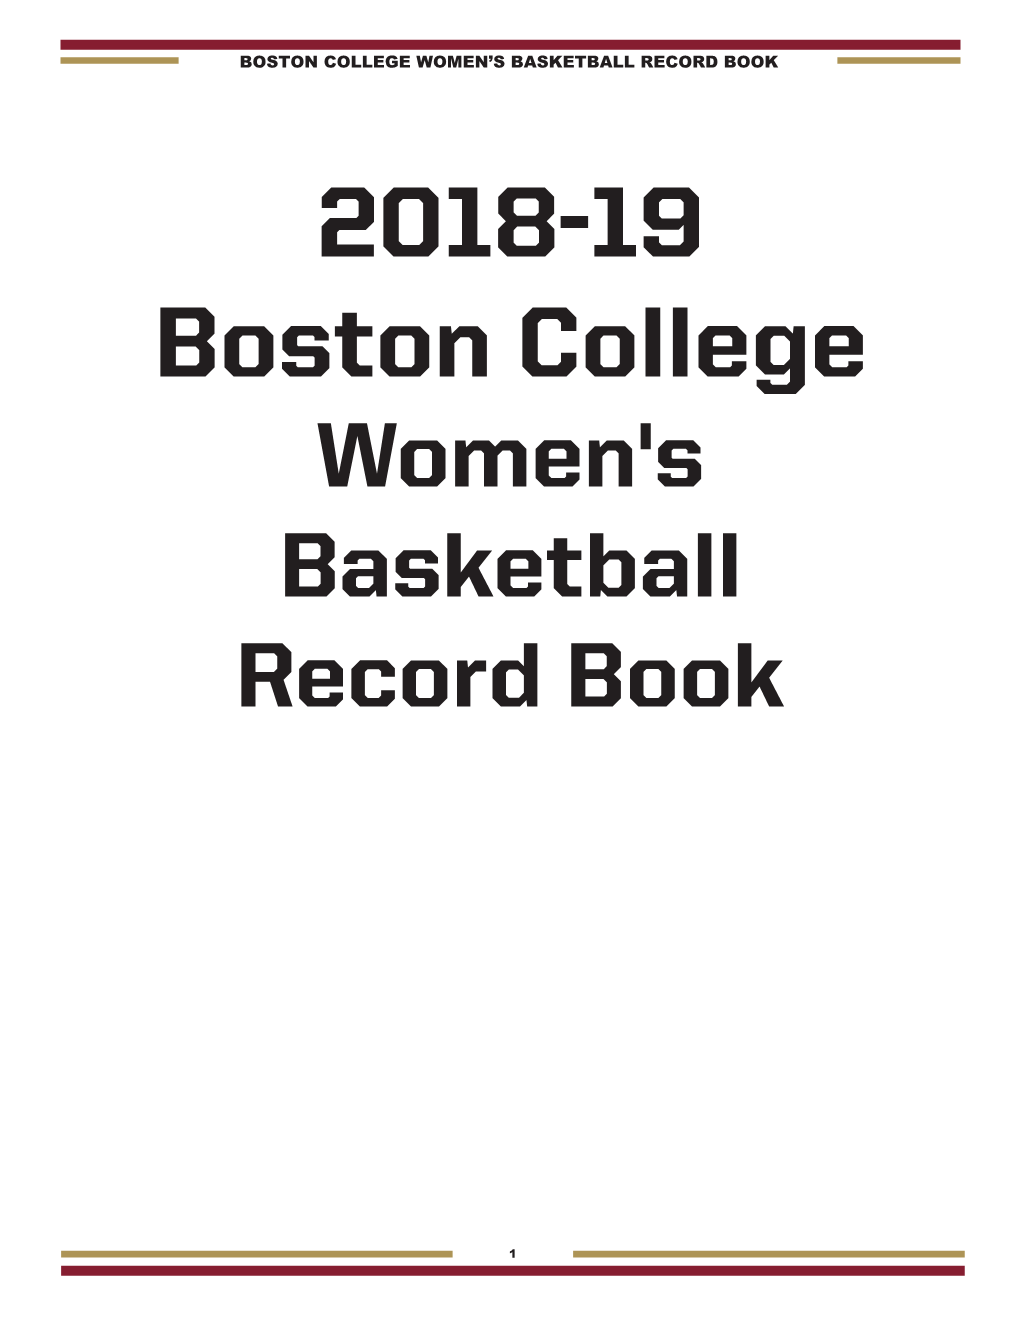 2018-19 Boston College Women's Basketball Record Book